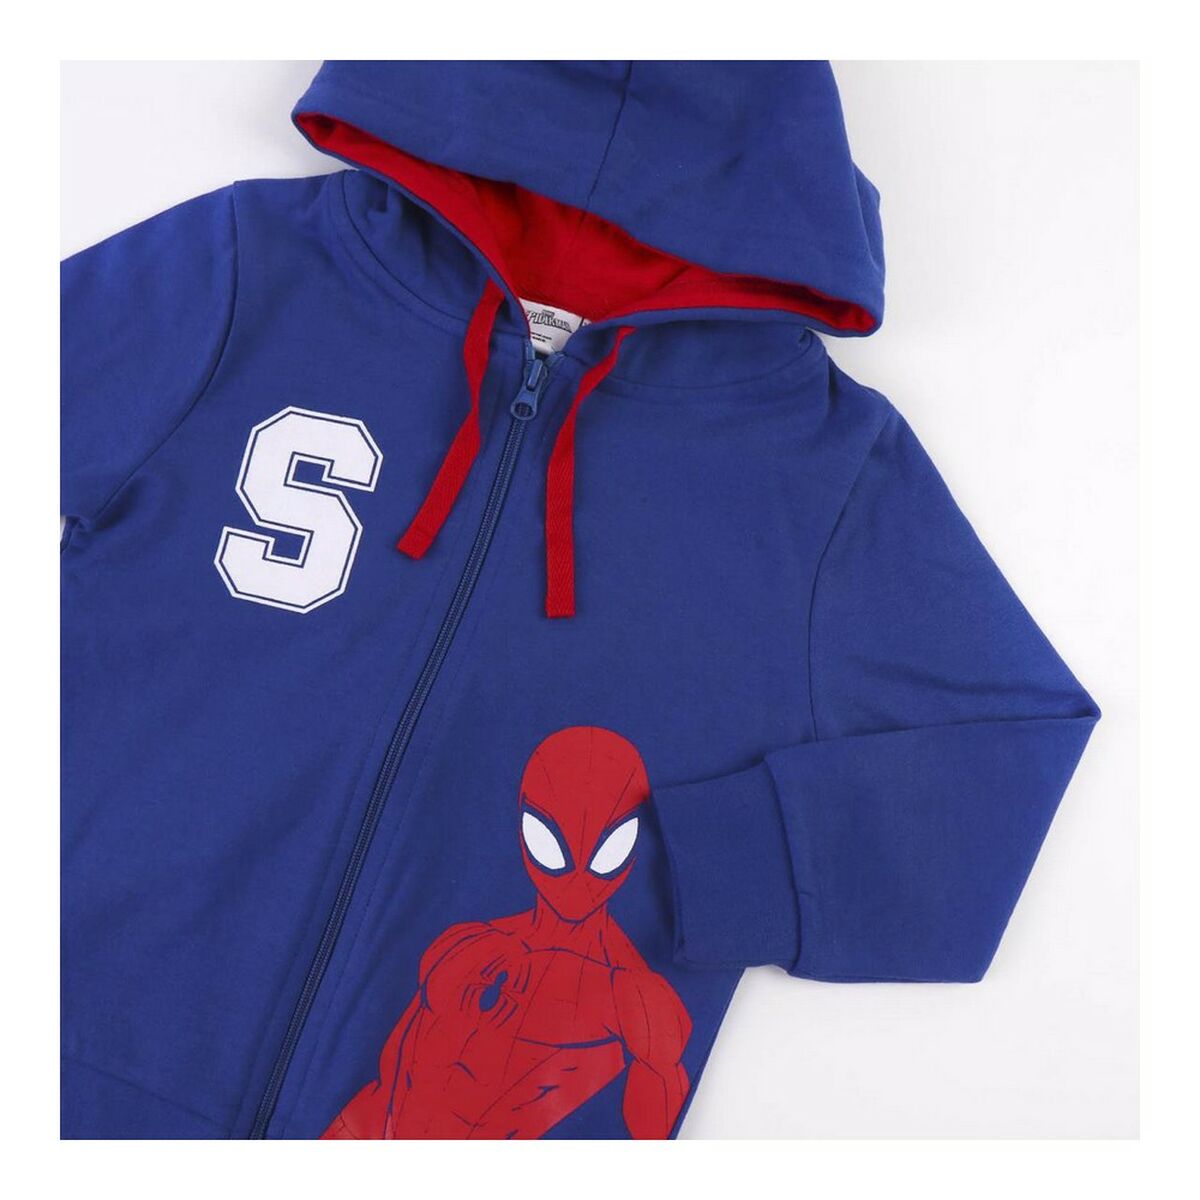 Kinder-Trainingsanzug Spiderman Blau